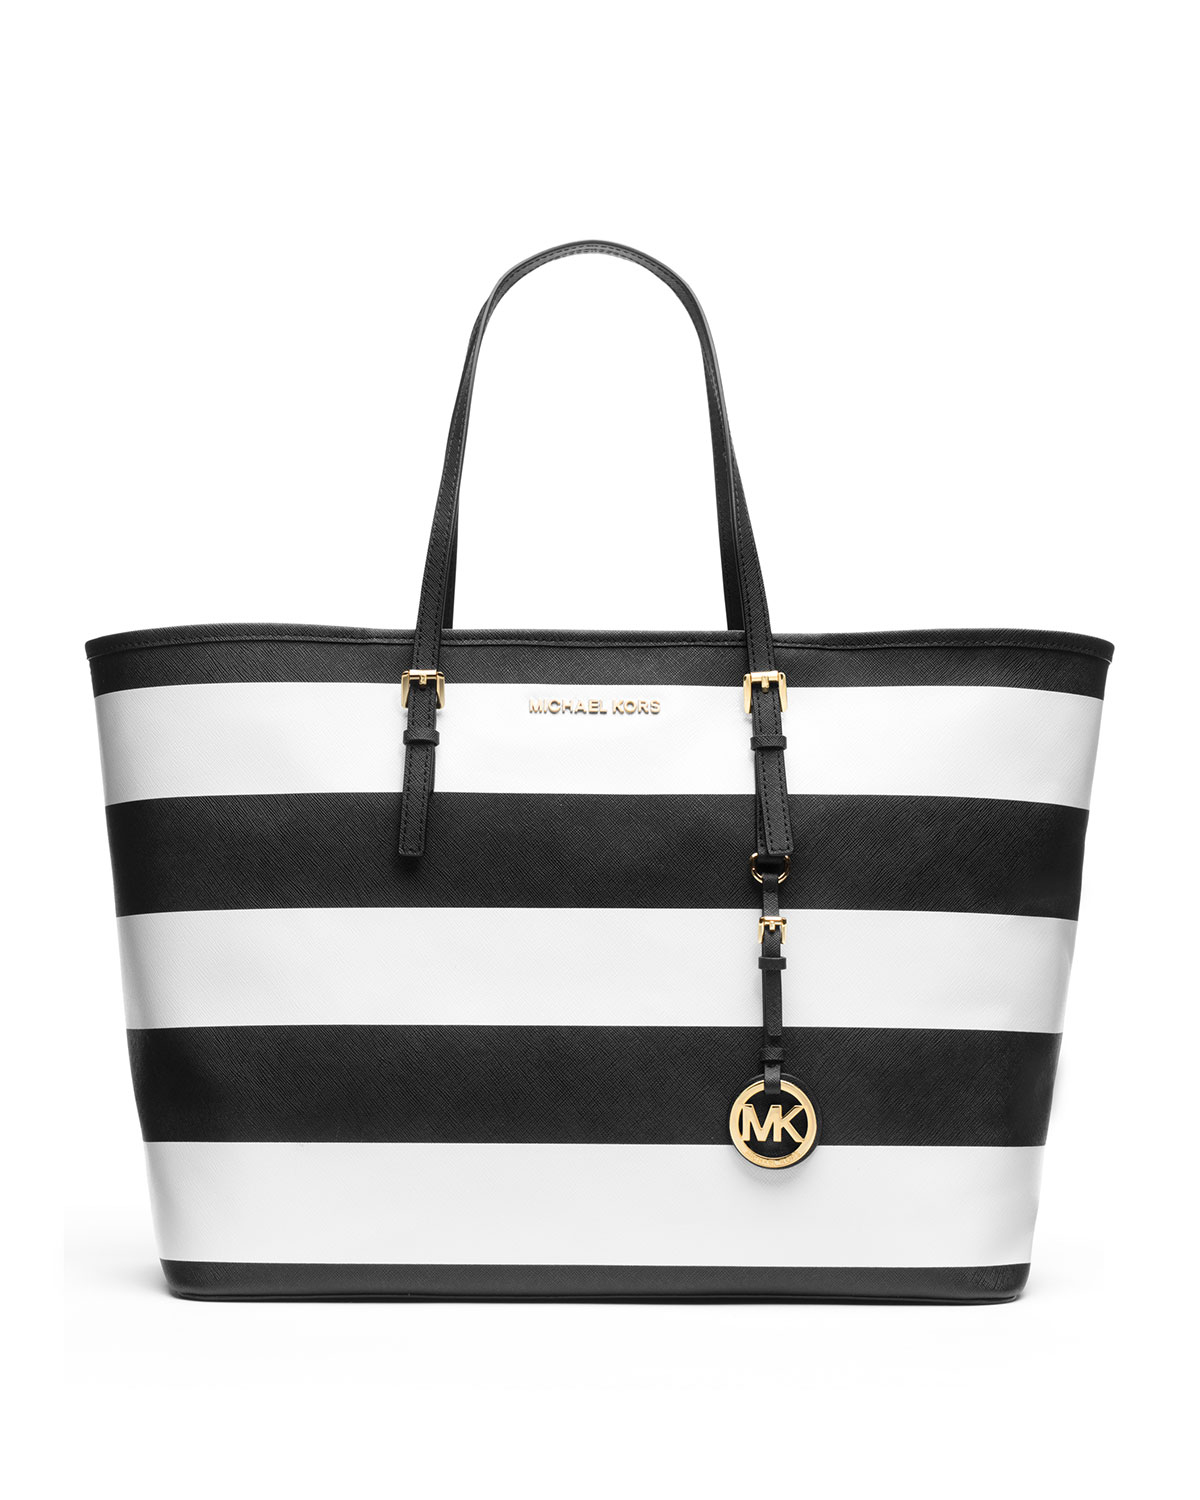 mk striped bag